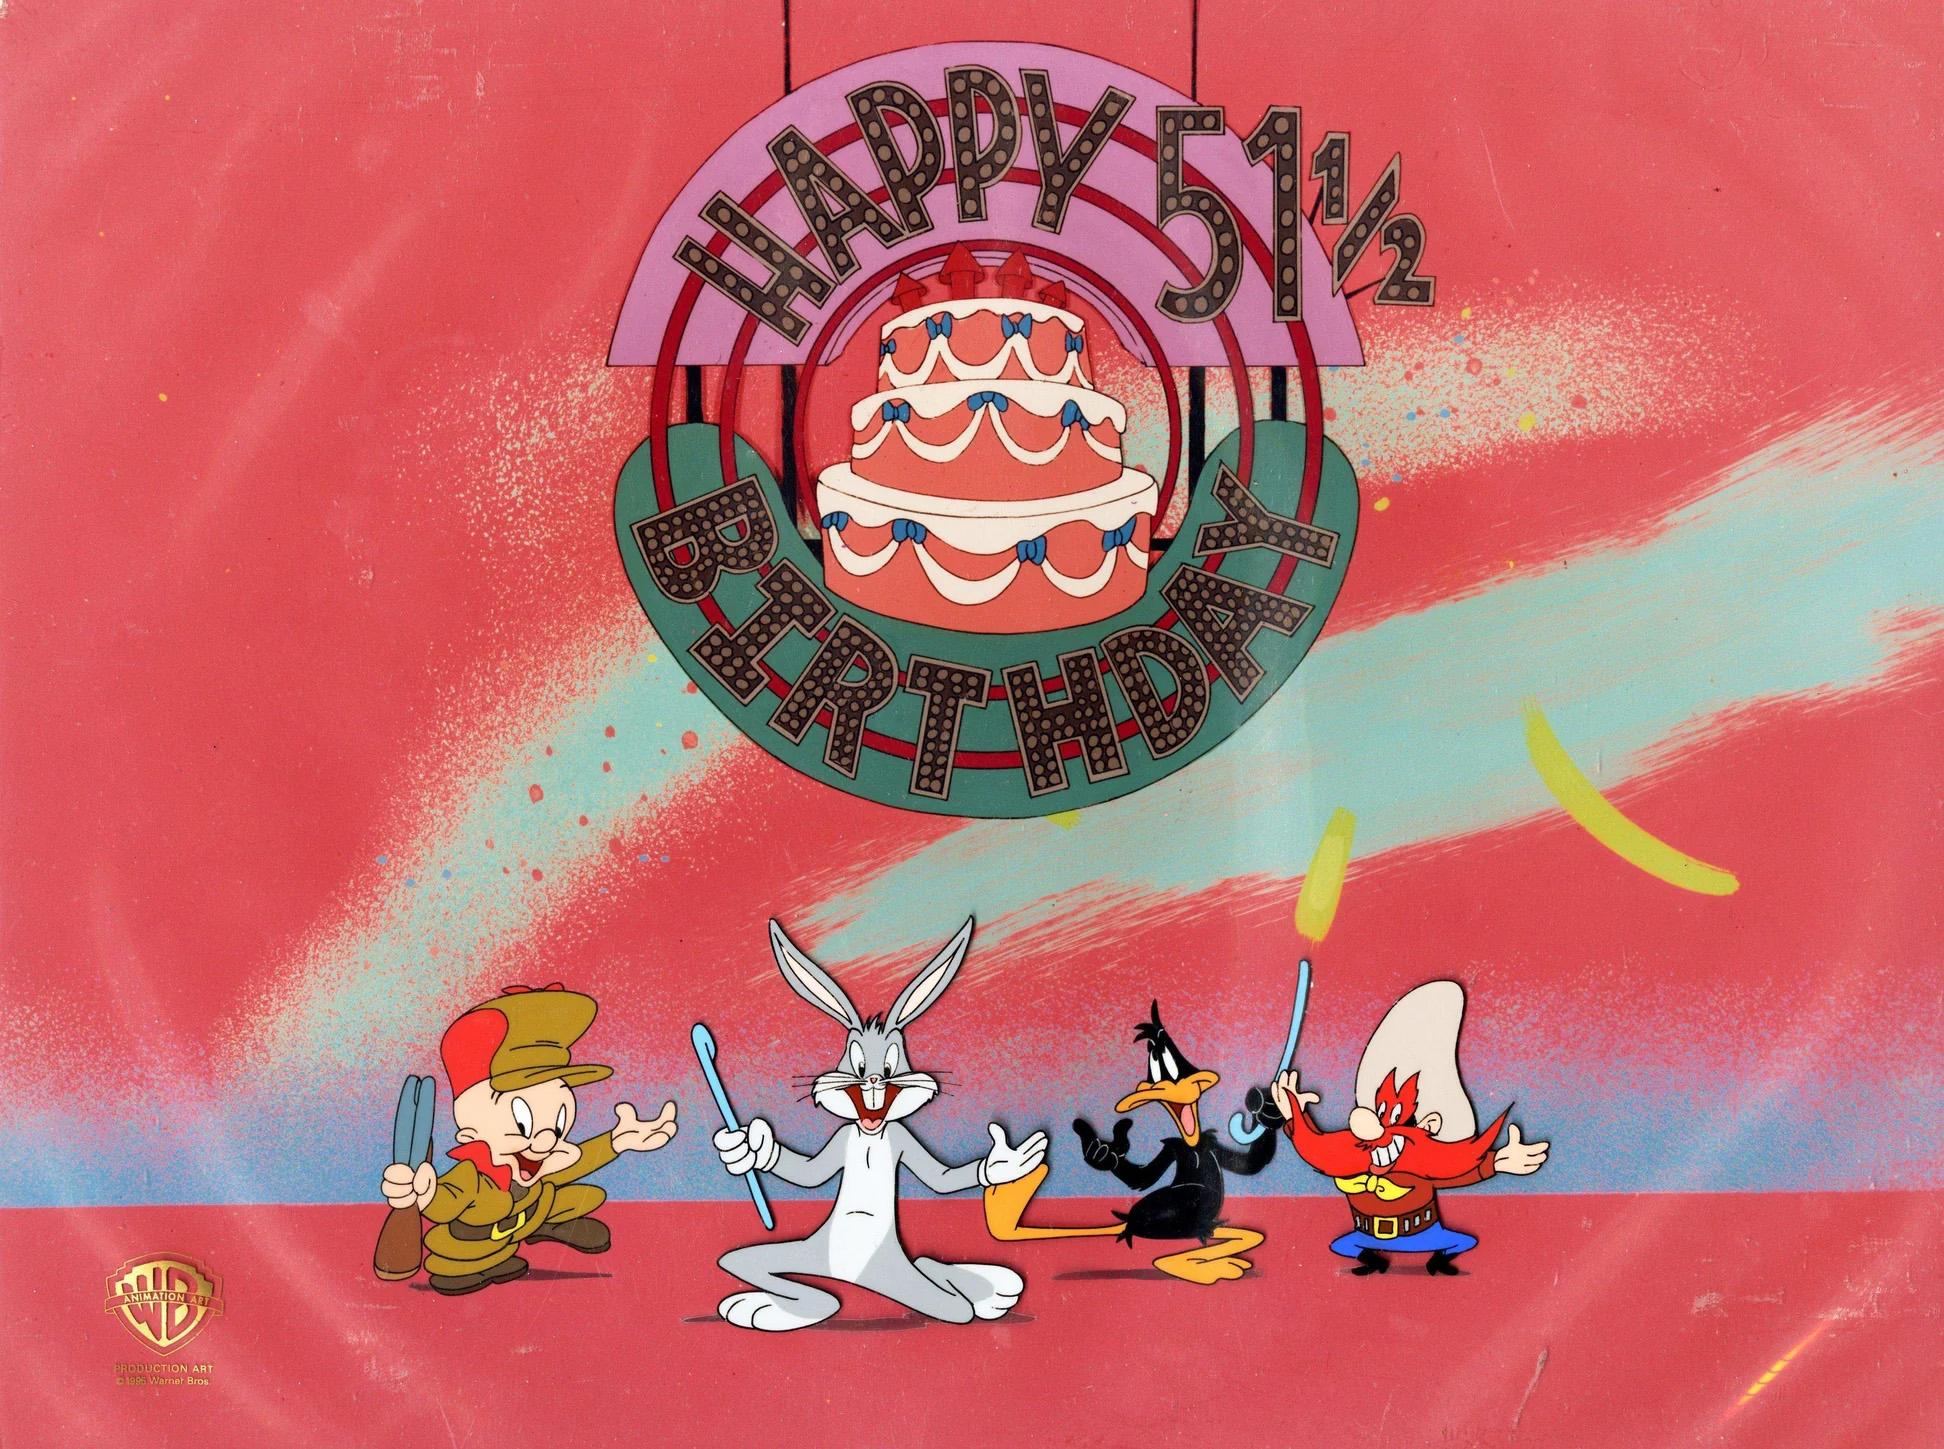 Looney Tunes Original Production Cel: Happy 51 1/2 Birthday von (Blooper) Bunny – Art von Bob and Ruth Clampett